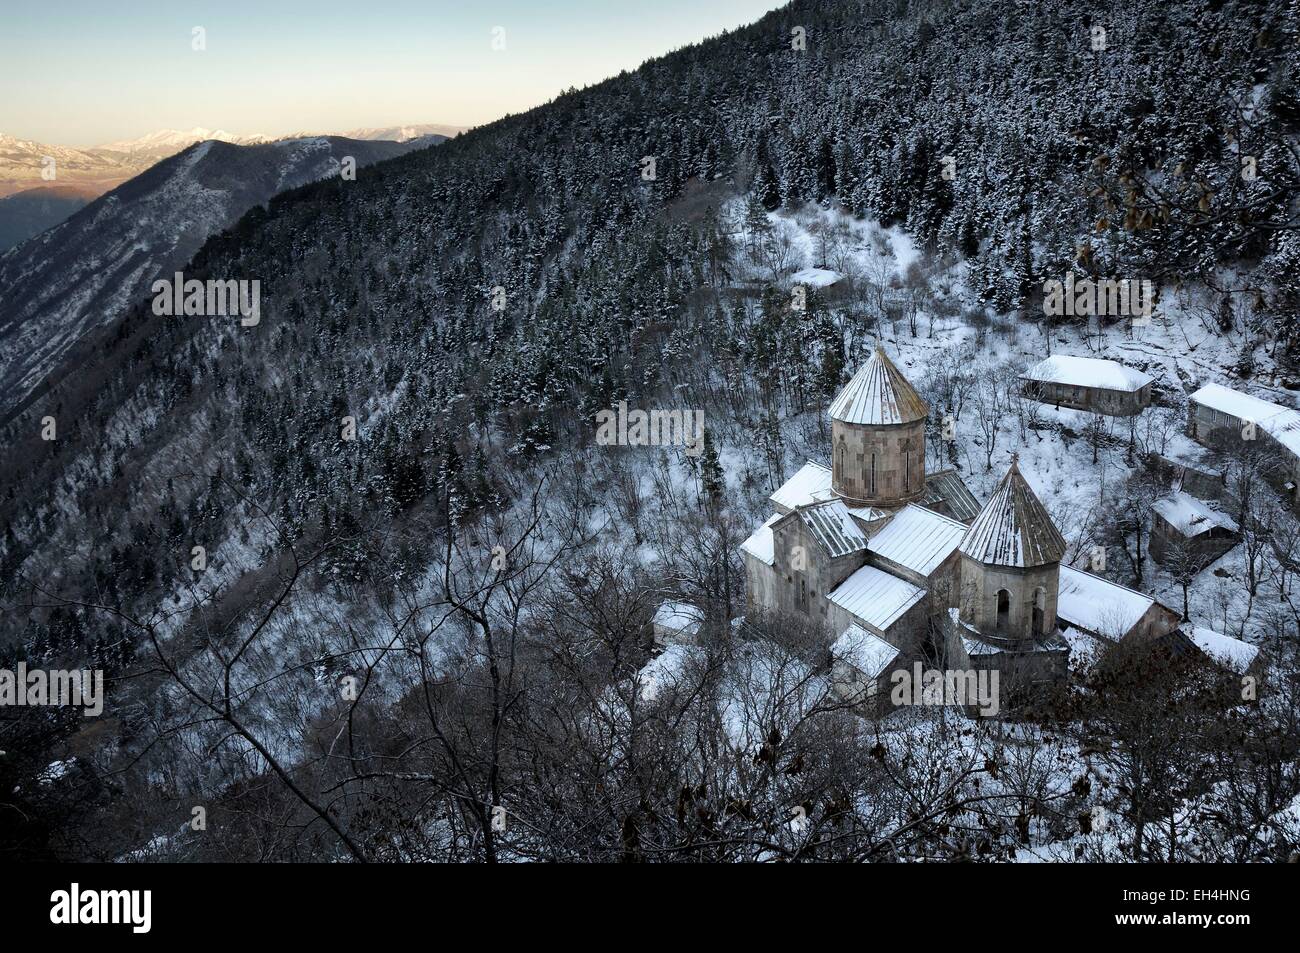 Georgia e Caucaso, Samtskhe-Javakheti, area di Akhaltsikhe, cristiano ortodosso monastero di Sapara circondato da boschi e montagne coperte di neve in inverno Foto Stock